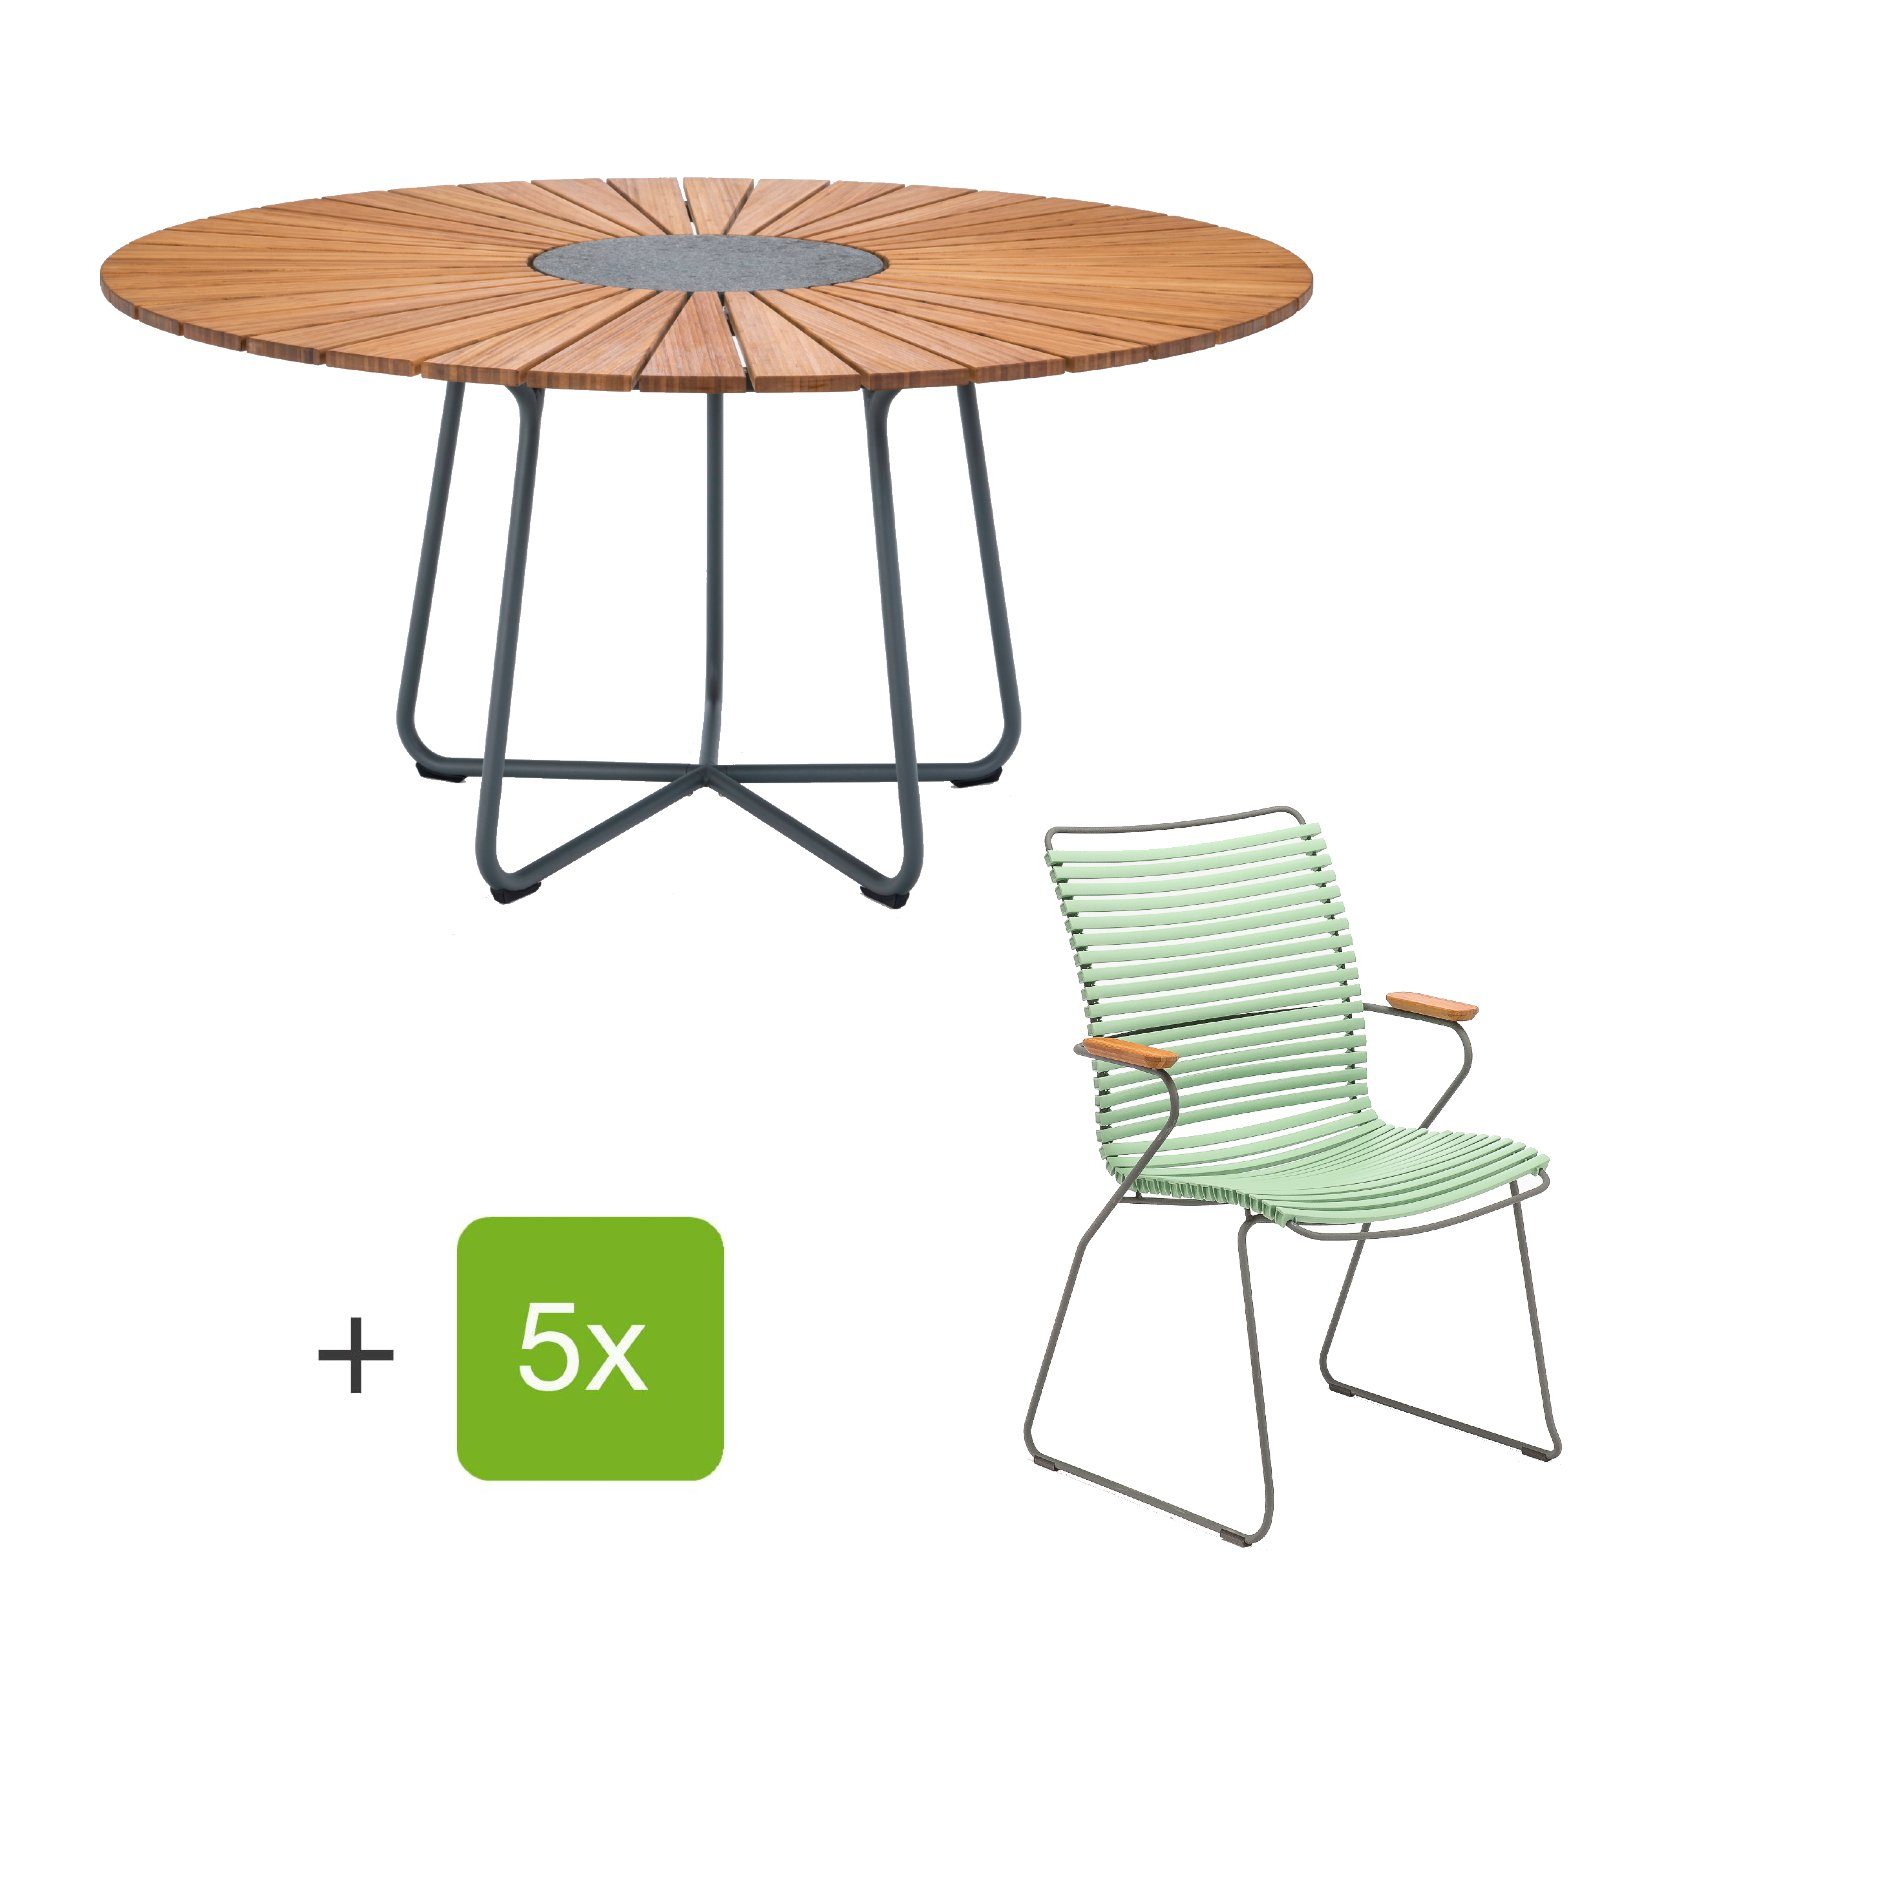 Houe Gartenmöbel-Set mit Tisch "Circle" und Stapelsesessel hoch "Click", Lamellen dusty green